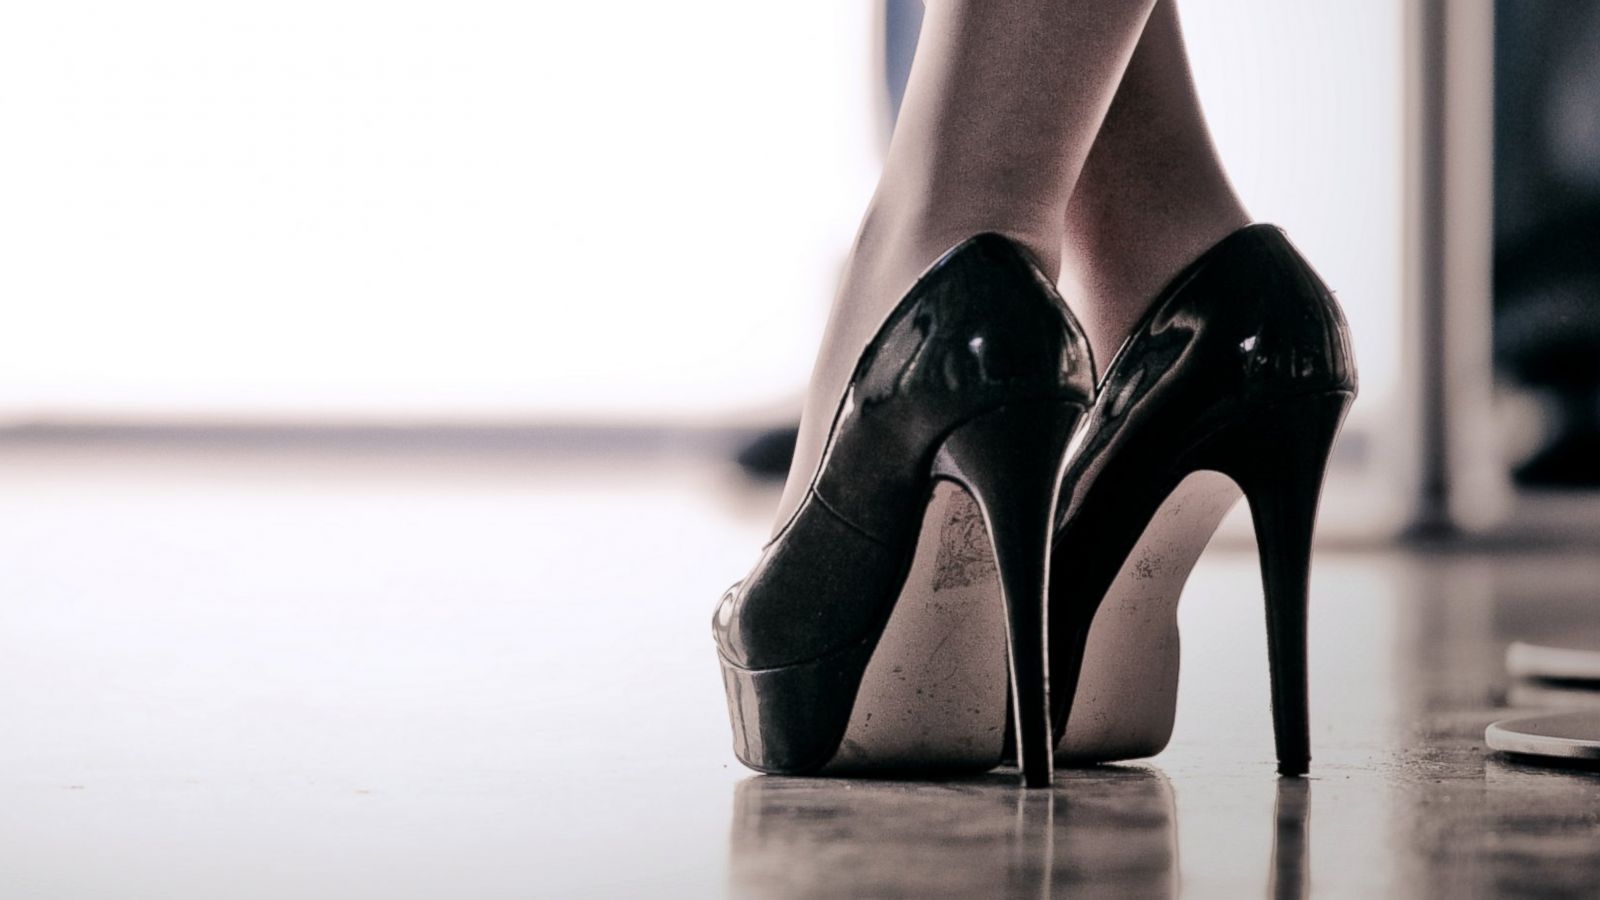 Buy > high heels design > in stock